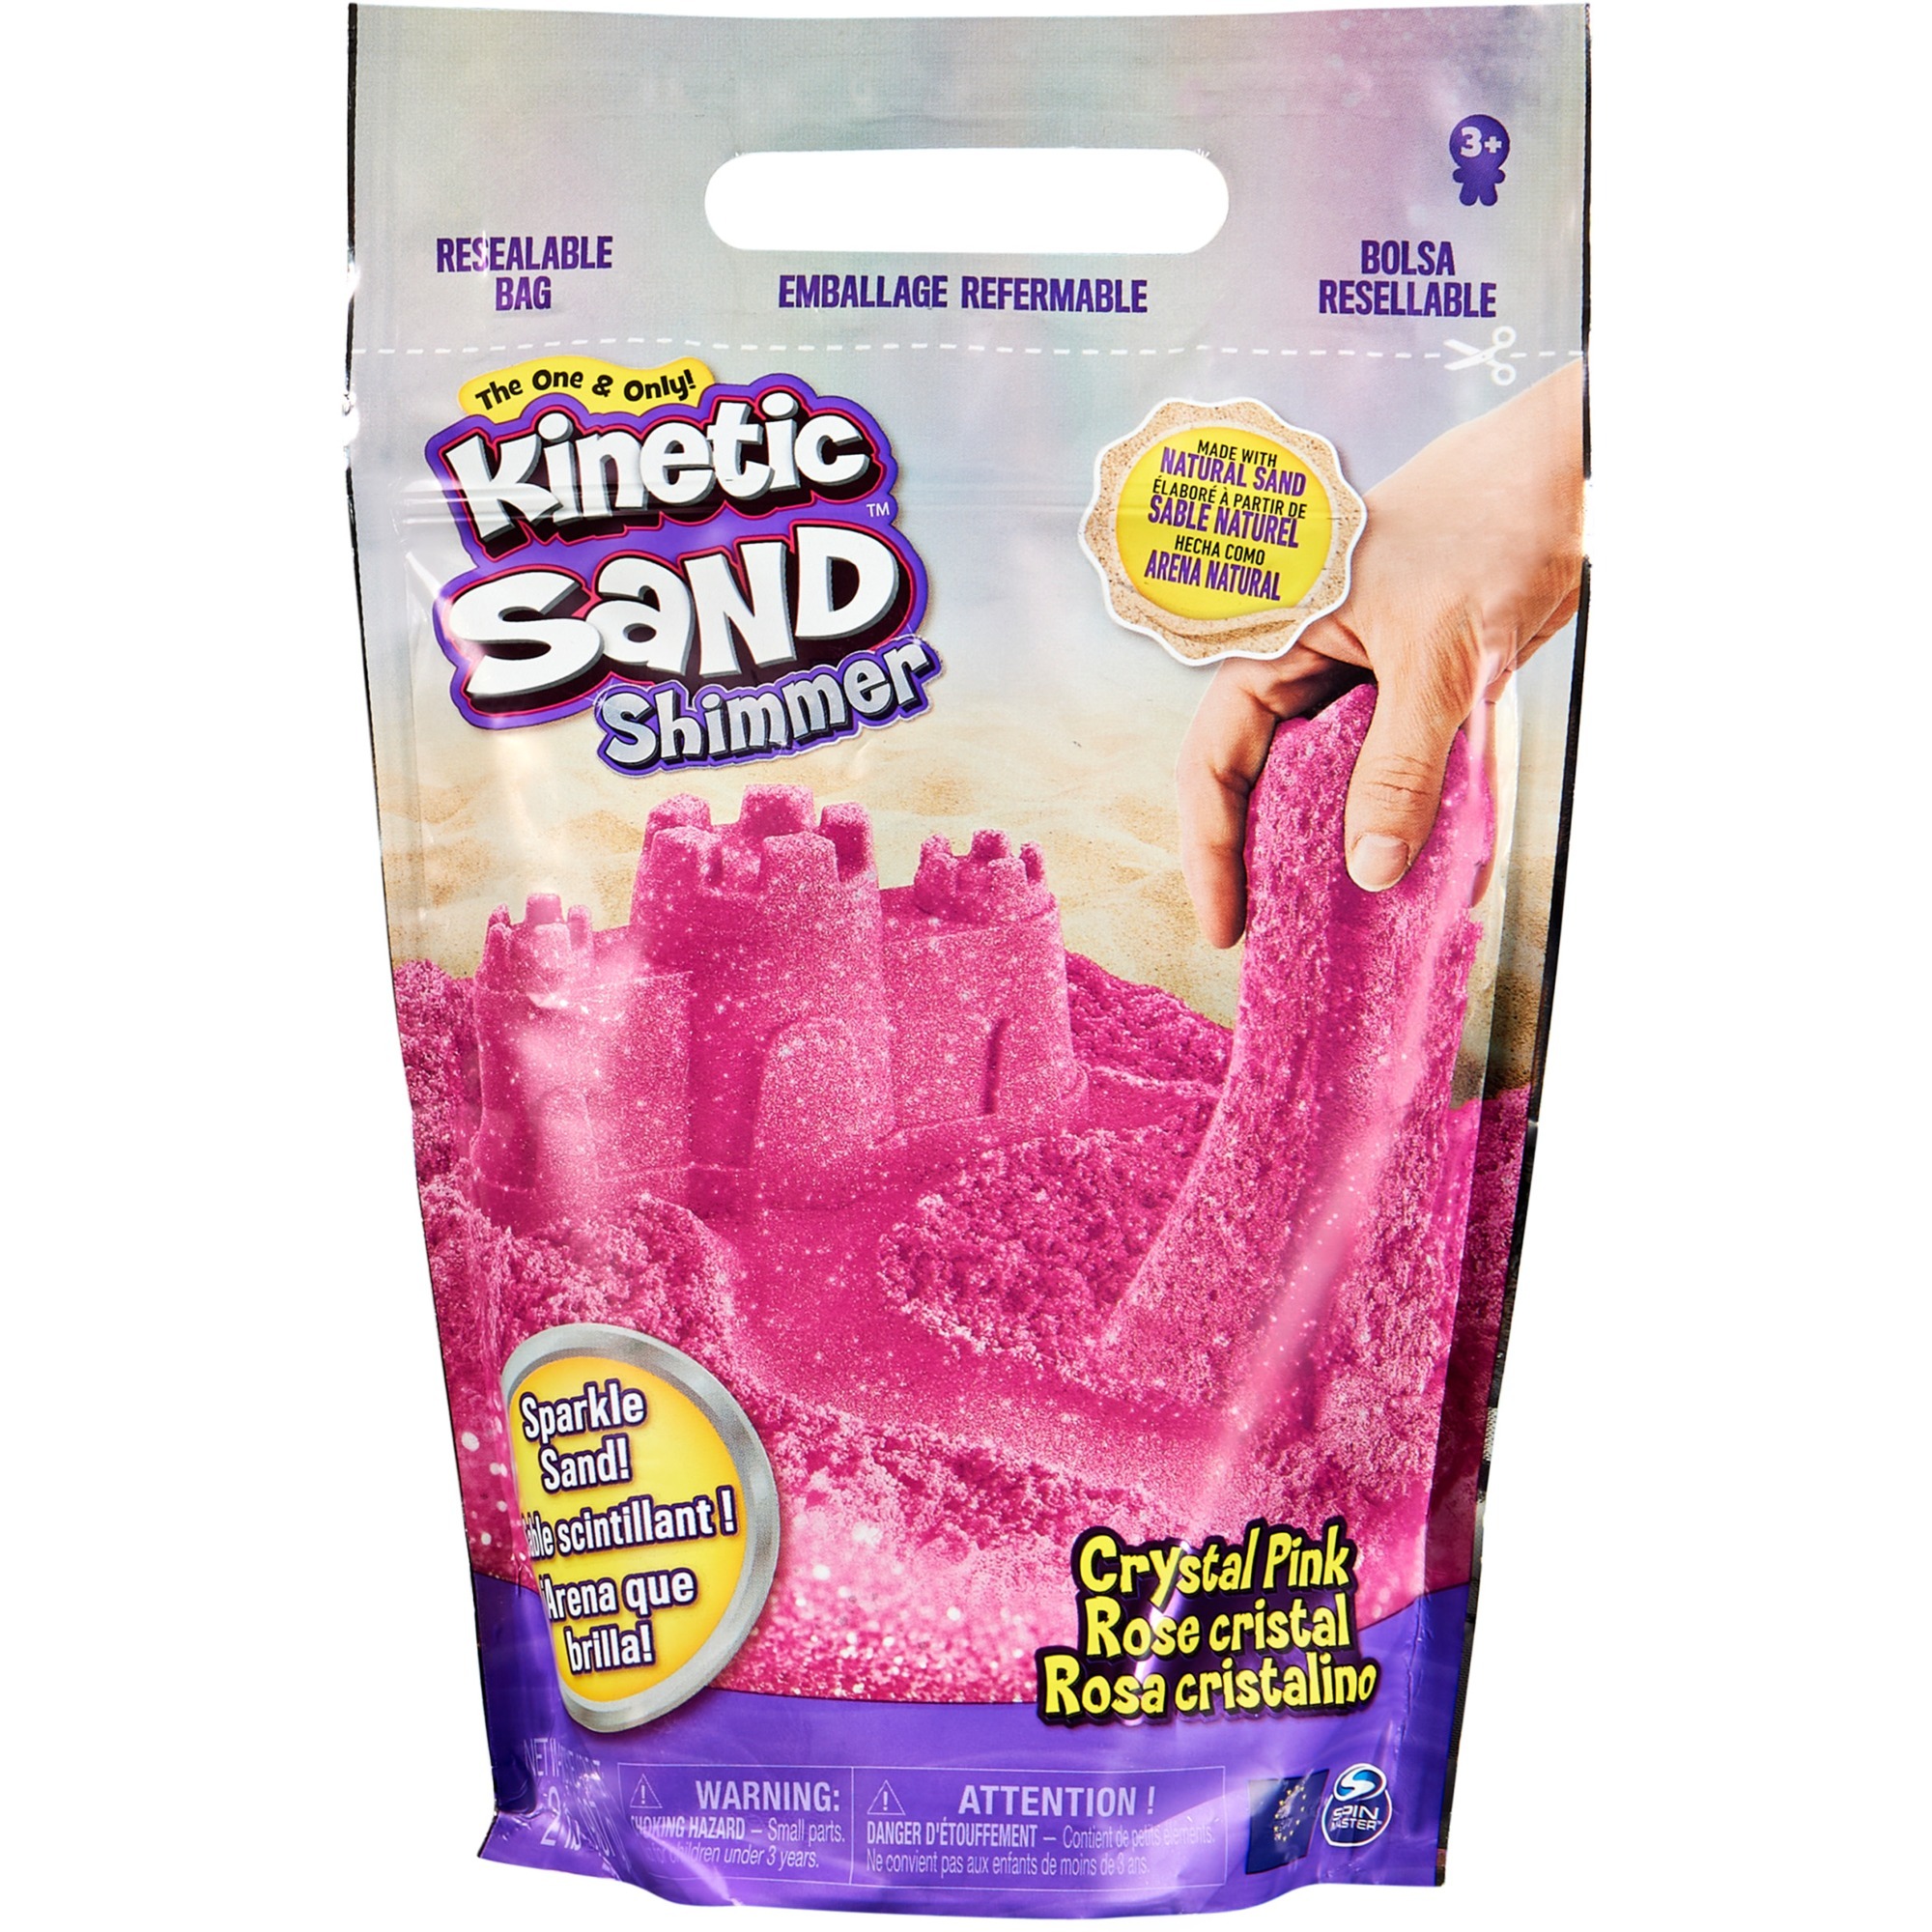 Image of Alternate - Kinetic Sand - Schimmersand Crystal Pink, Spielsand online einkaufen bei Alternate